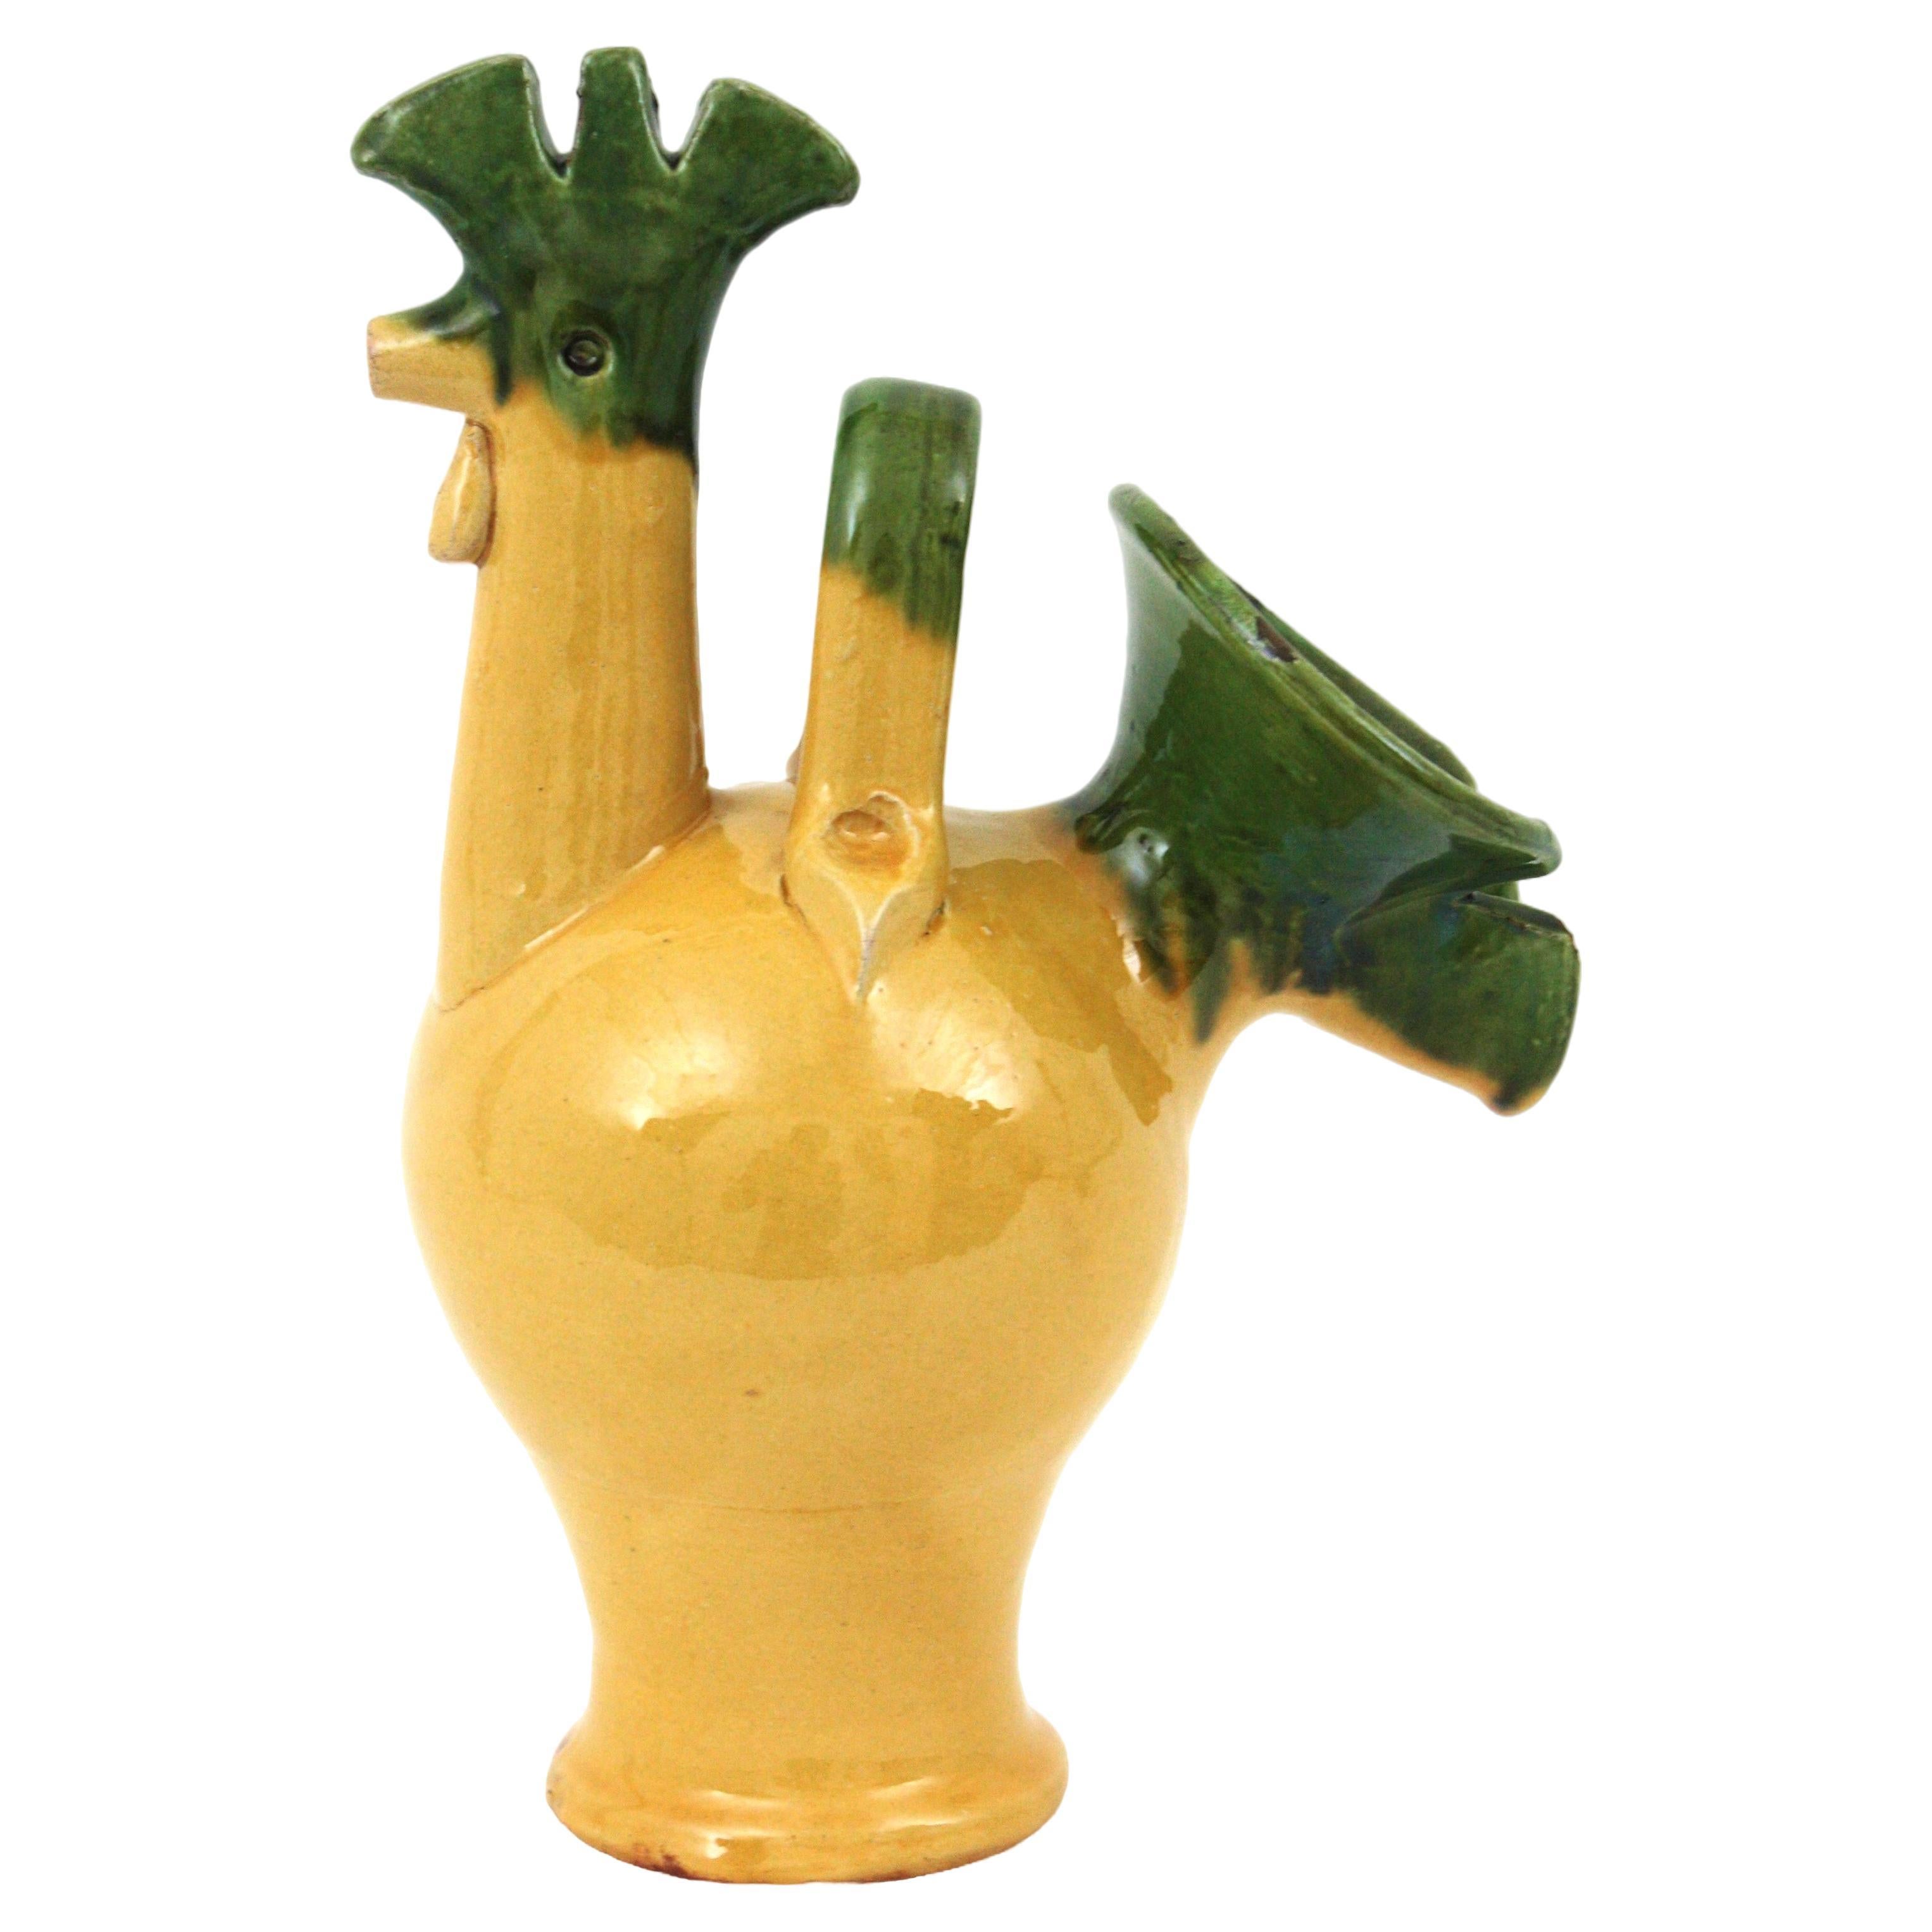 Auffälliger grüner und gelber Majolika-Keramikhahn, Frankreich, 1950er Jahre.
Handgefertigt aus gelb glasierter Keramik mit grünen Akzenten.
Ein cooler Akzent für jede Küche oder als Servierkrug zu verwenden. Hübsch als Teil einer Keramiksammlung in